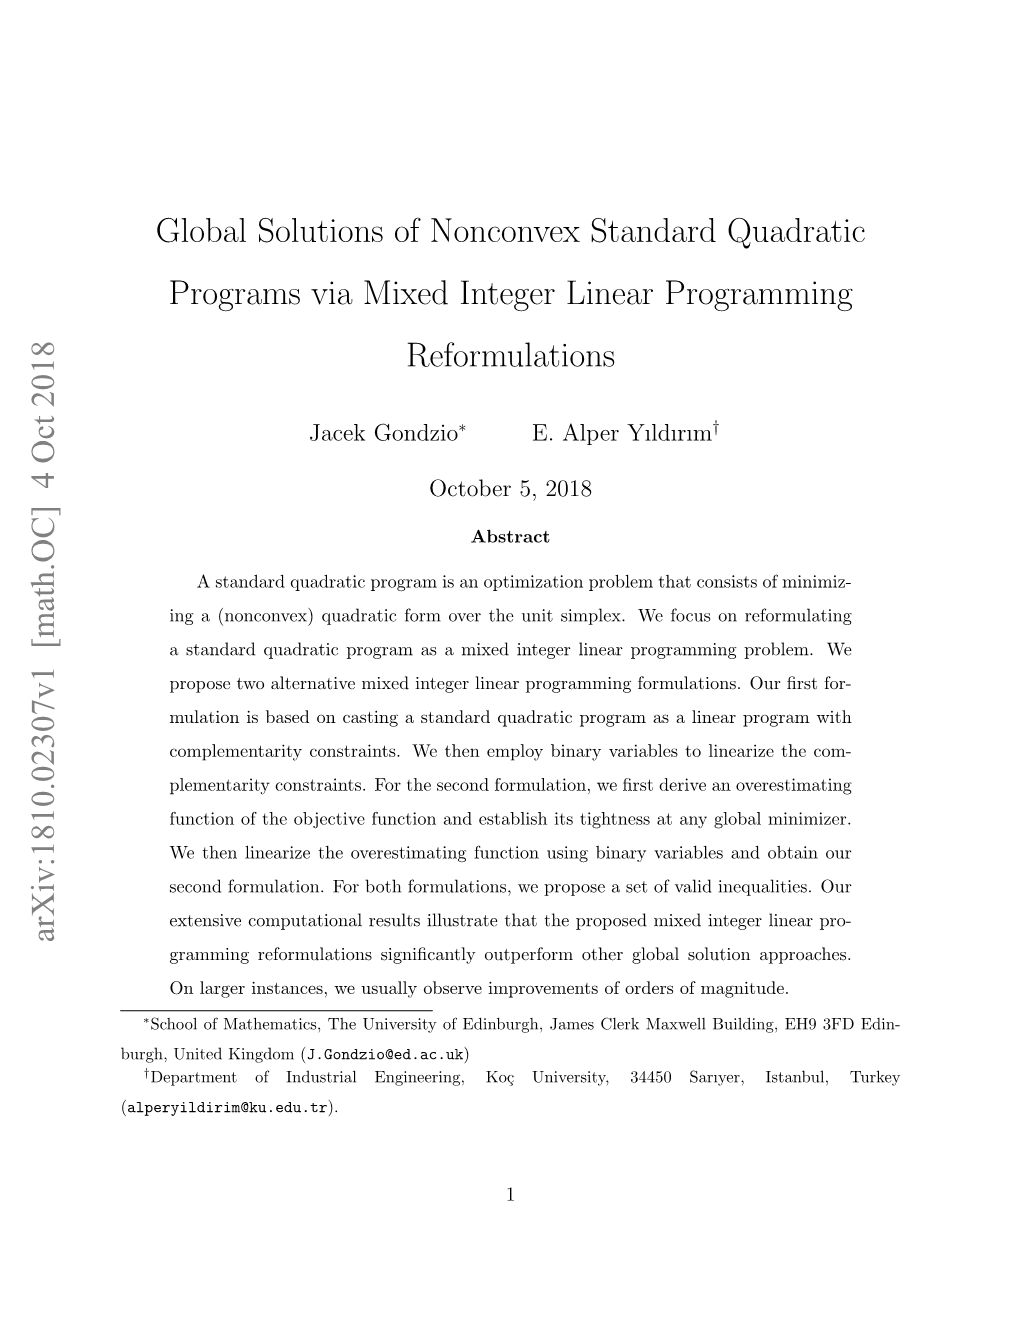 Global Solutions of Nonconvex Standard Quadratic Programs Via Mixed Integer Linear Programming Reformulations